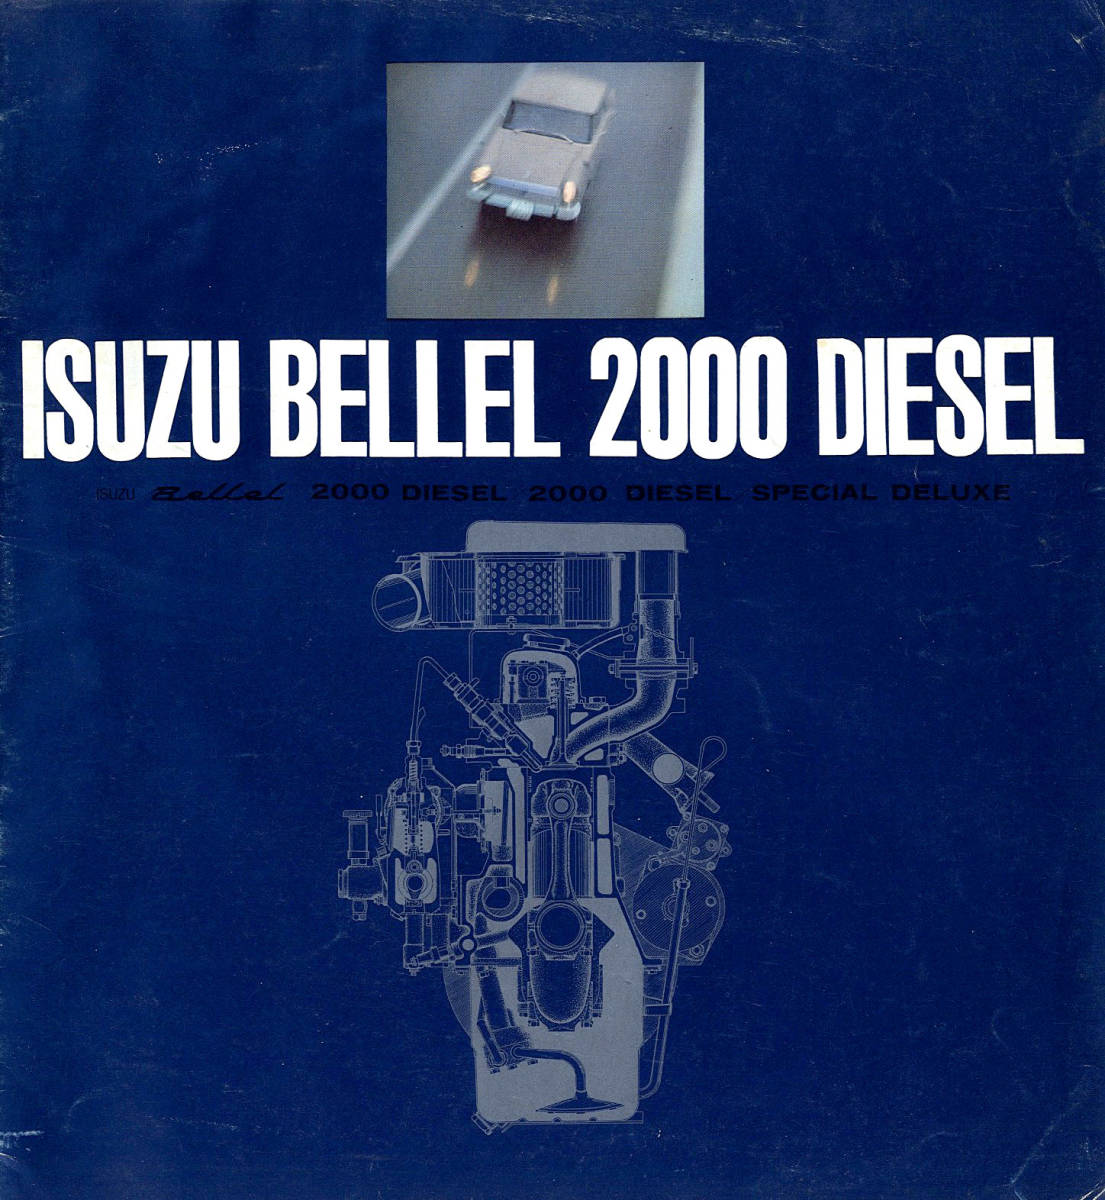 【旧車カタログ】 昭和39年 いすゞ ベレル 2000 ディーゼル  希少カタログの画像1